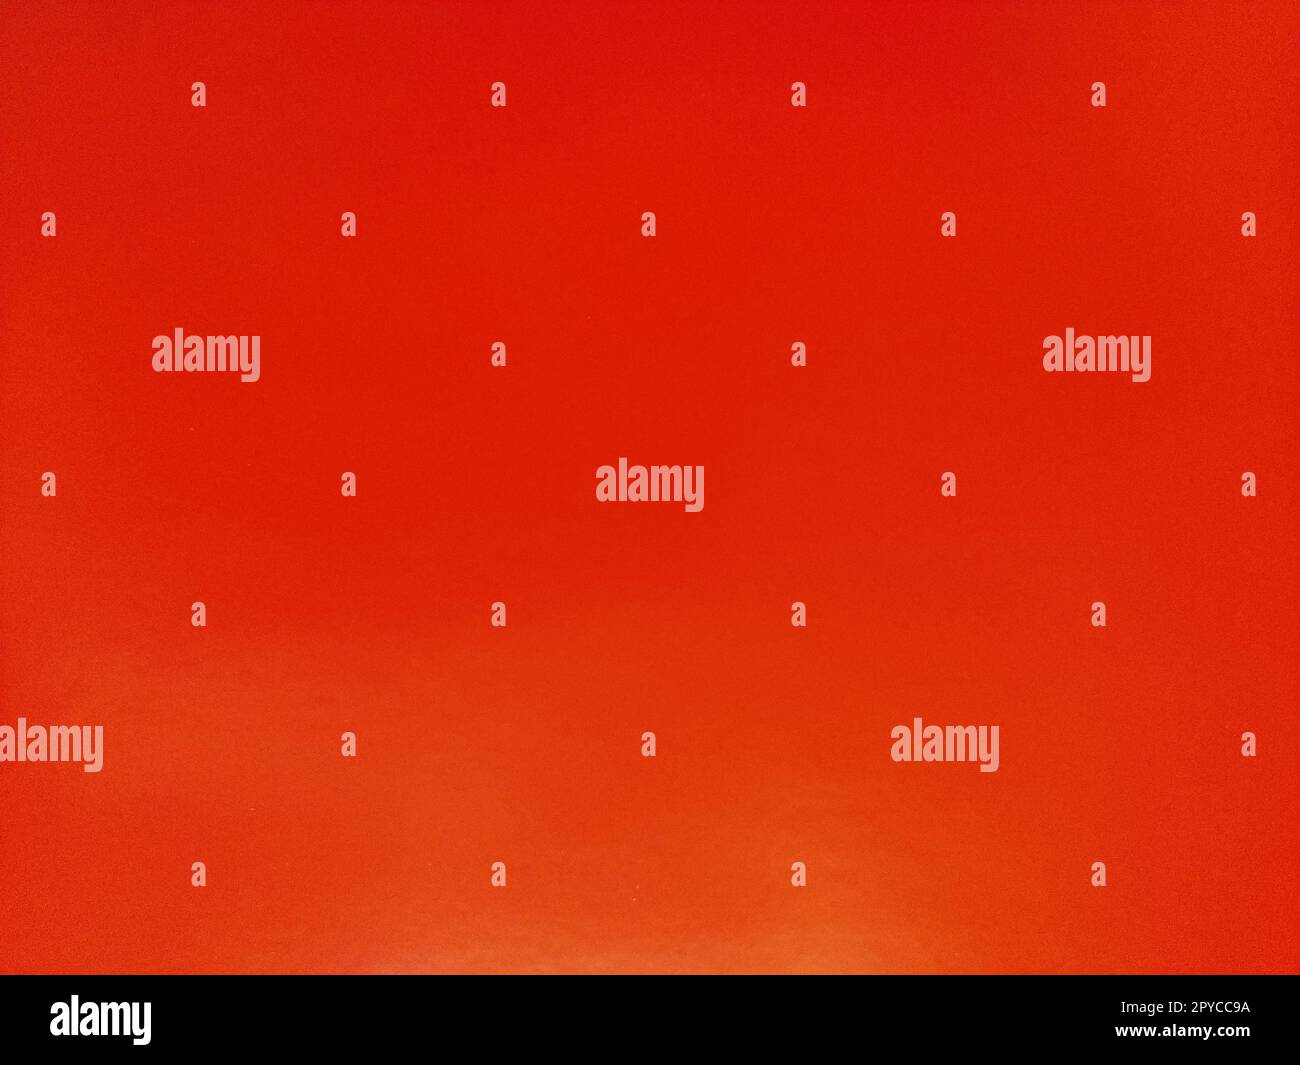 Sfondo rosso arancione immagini e fotografie stock ad alta risoluzione -  Alamy